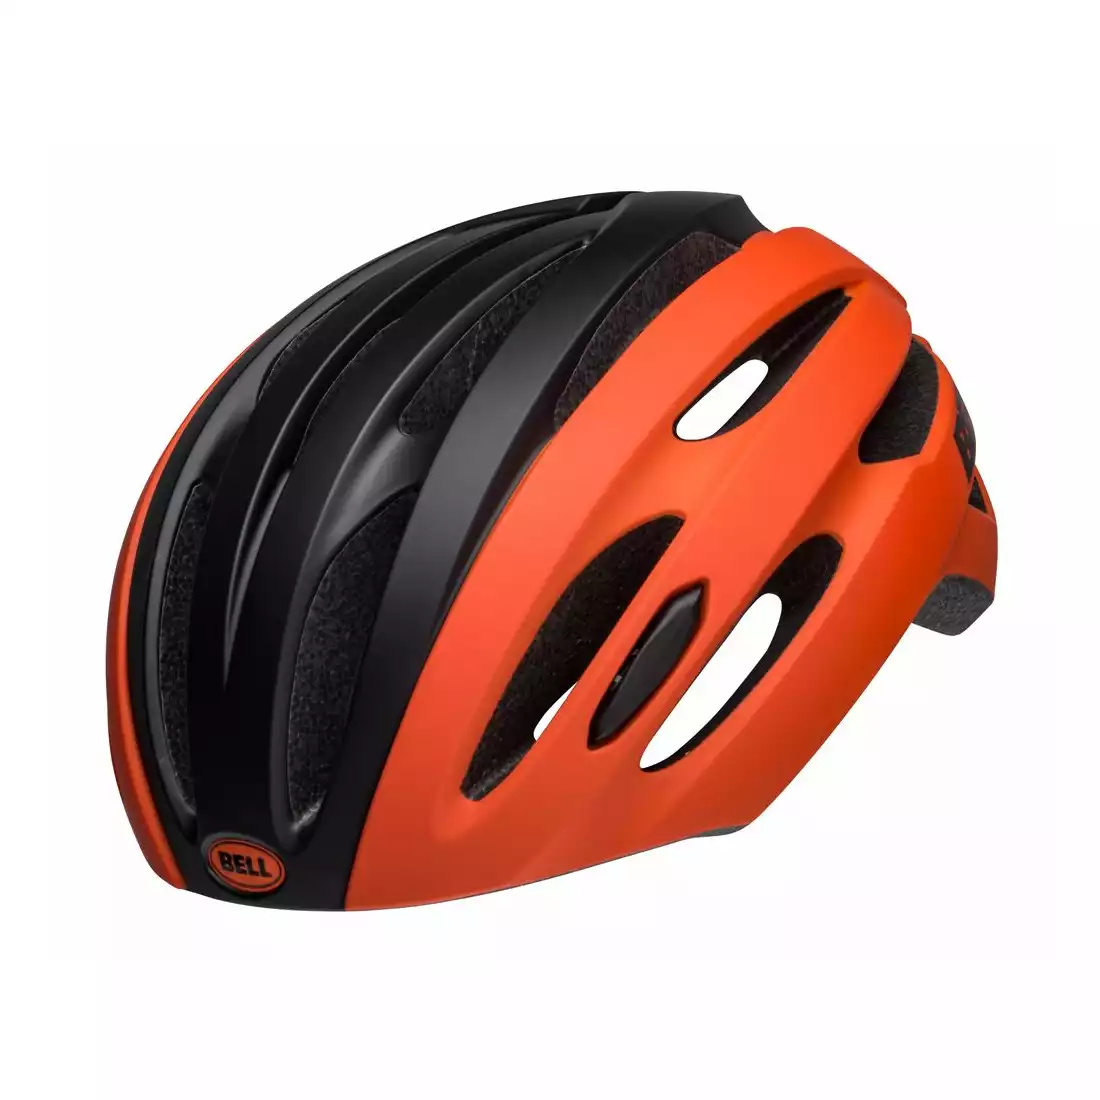 BELL AVENUE road bike helmet, orange